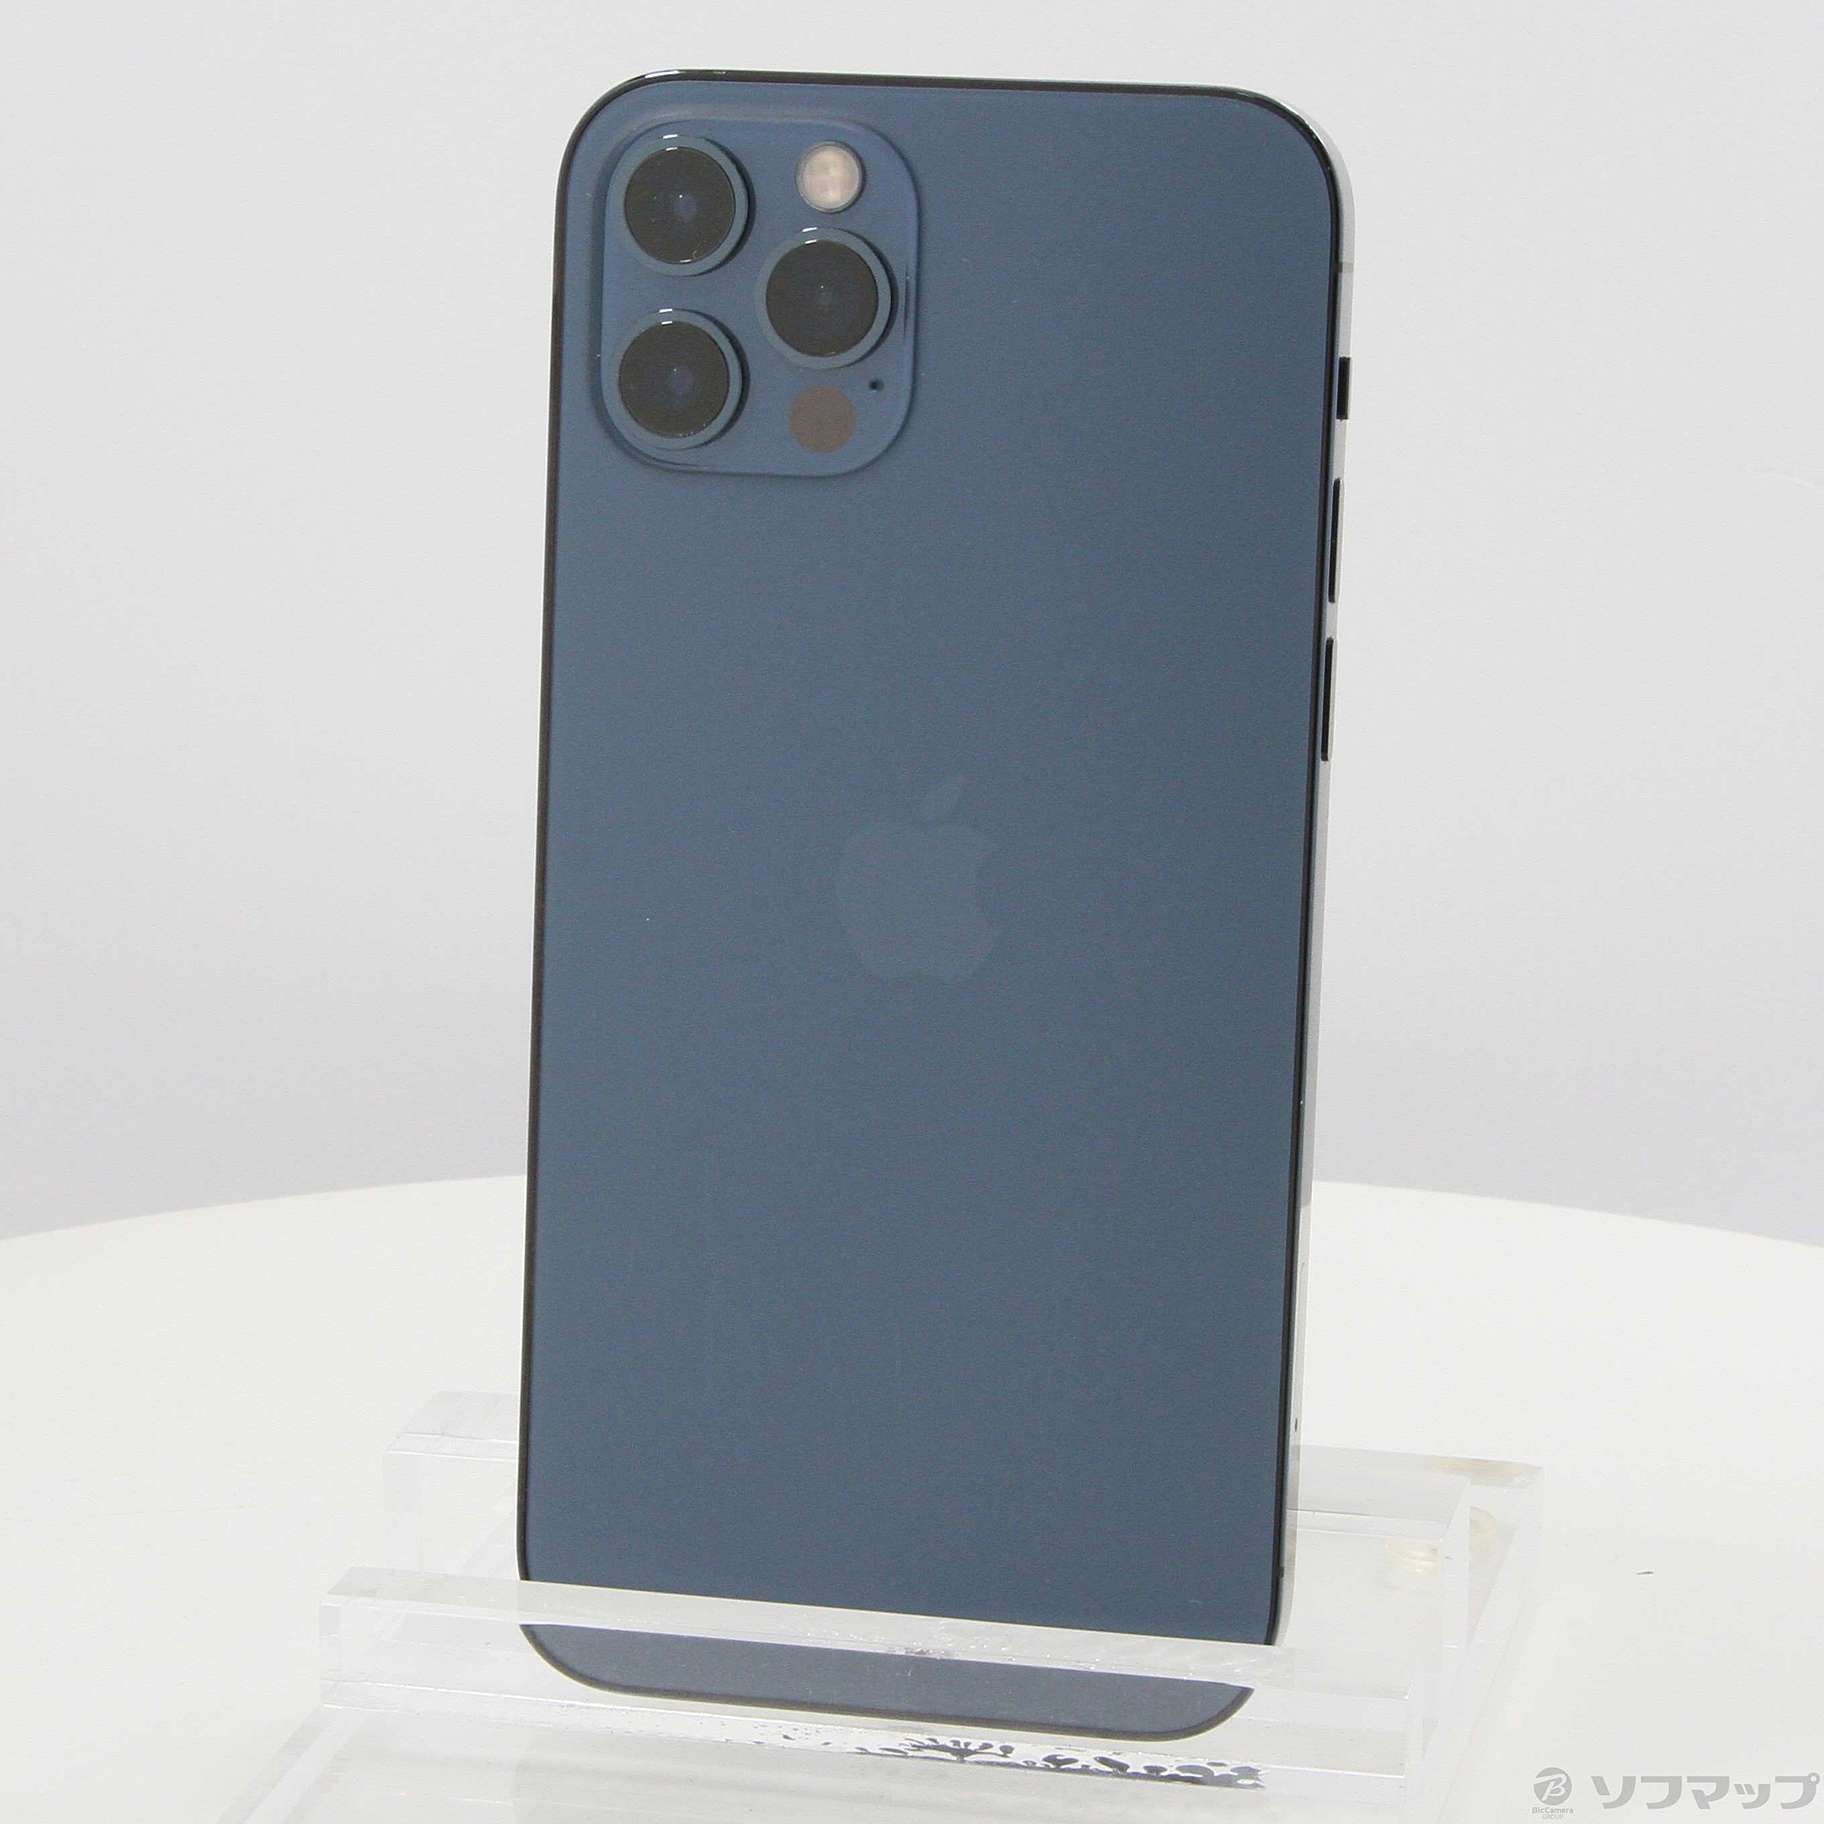 アップル iPhone12 Pro 128GB パシフィックブルー